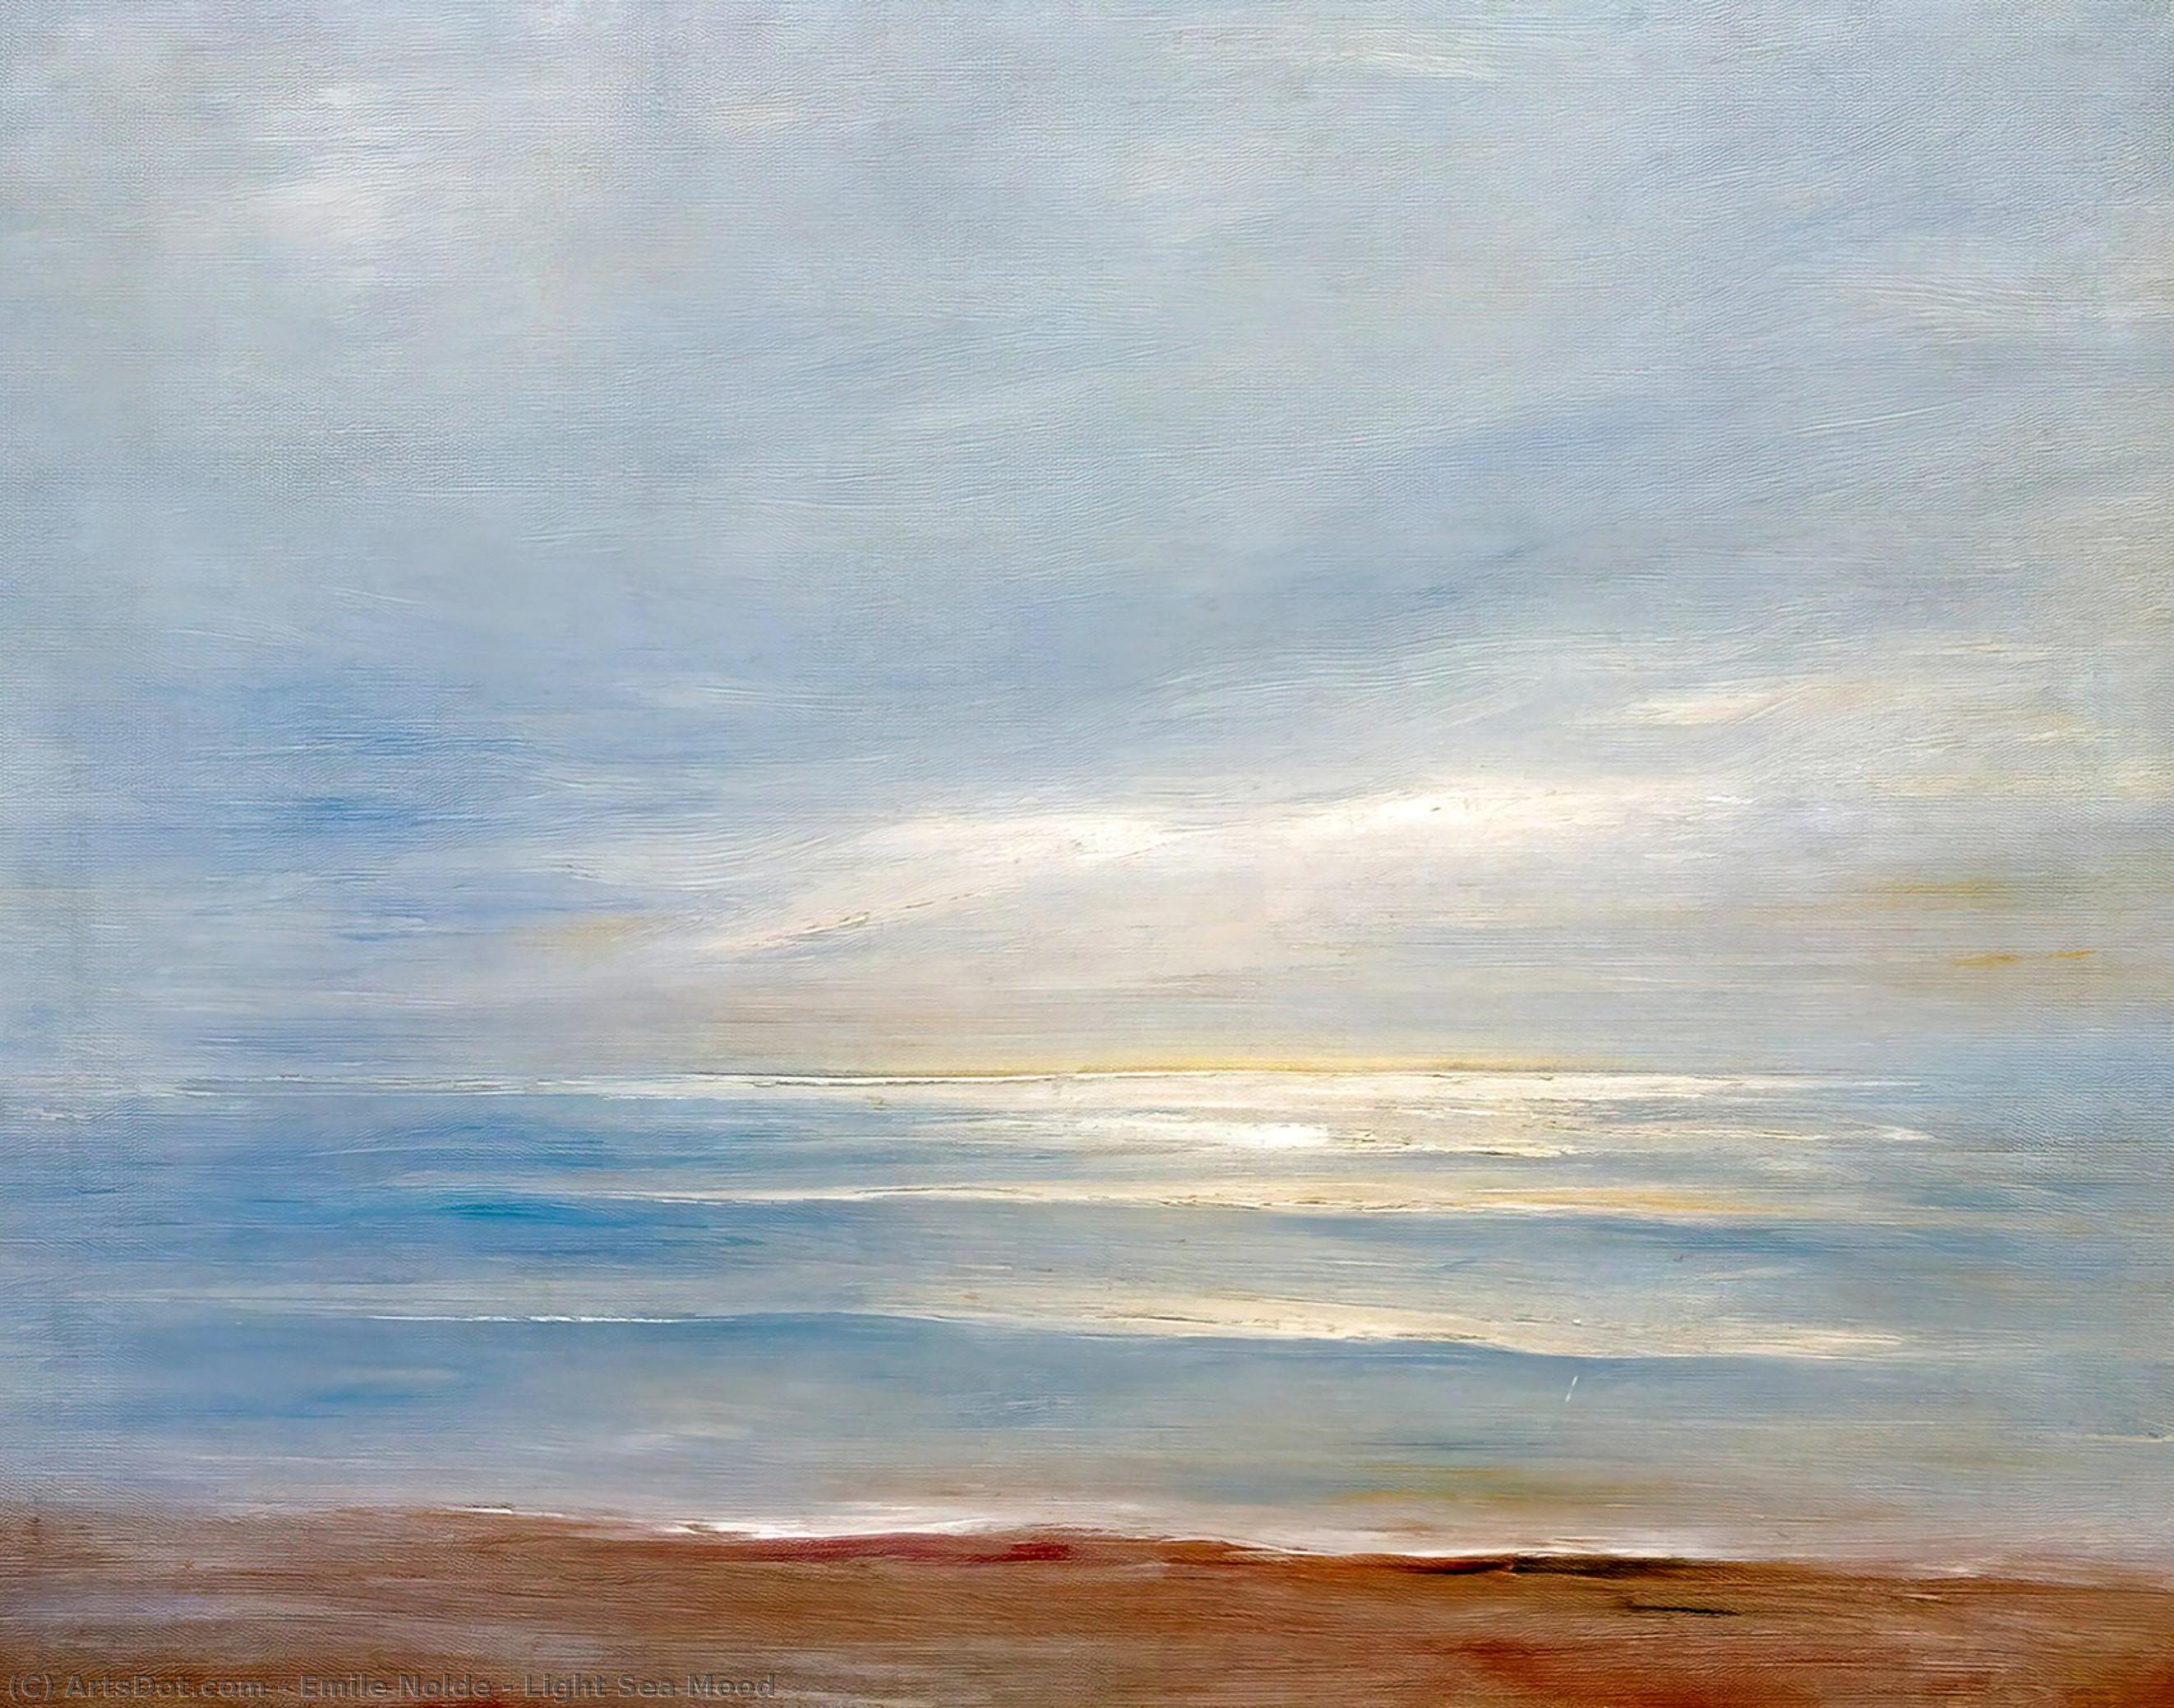 Wikoo.org - موسوعة الفنون الجميلة - اللوحة، العمل الفني Emile Nolde - Light Sea Mood